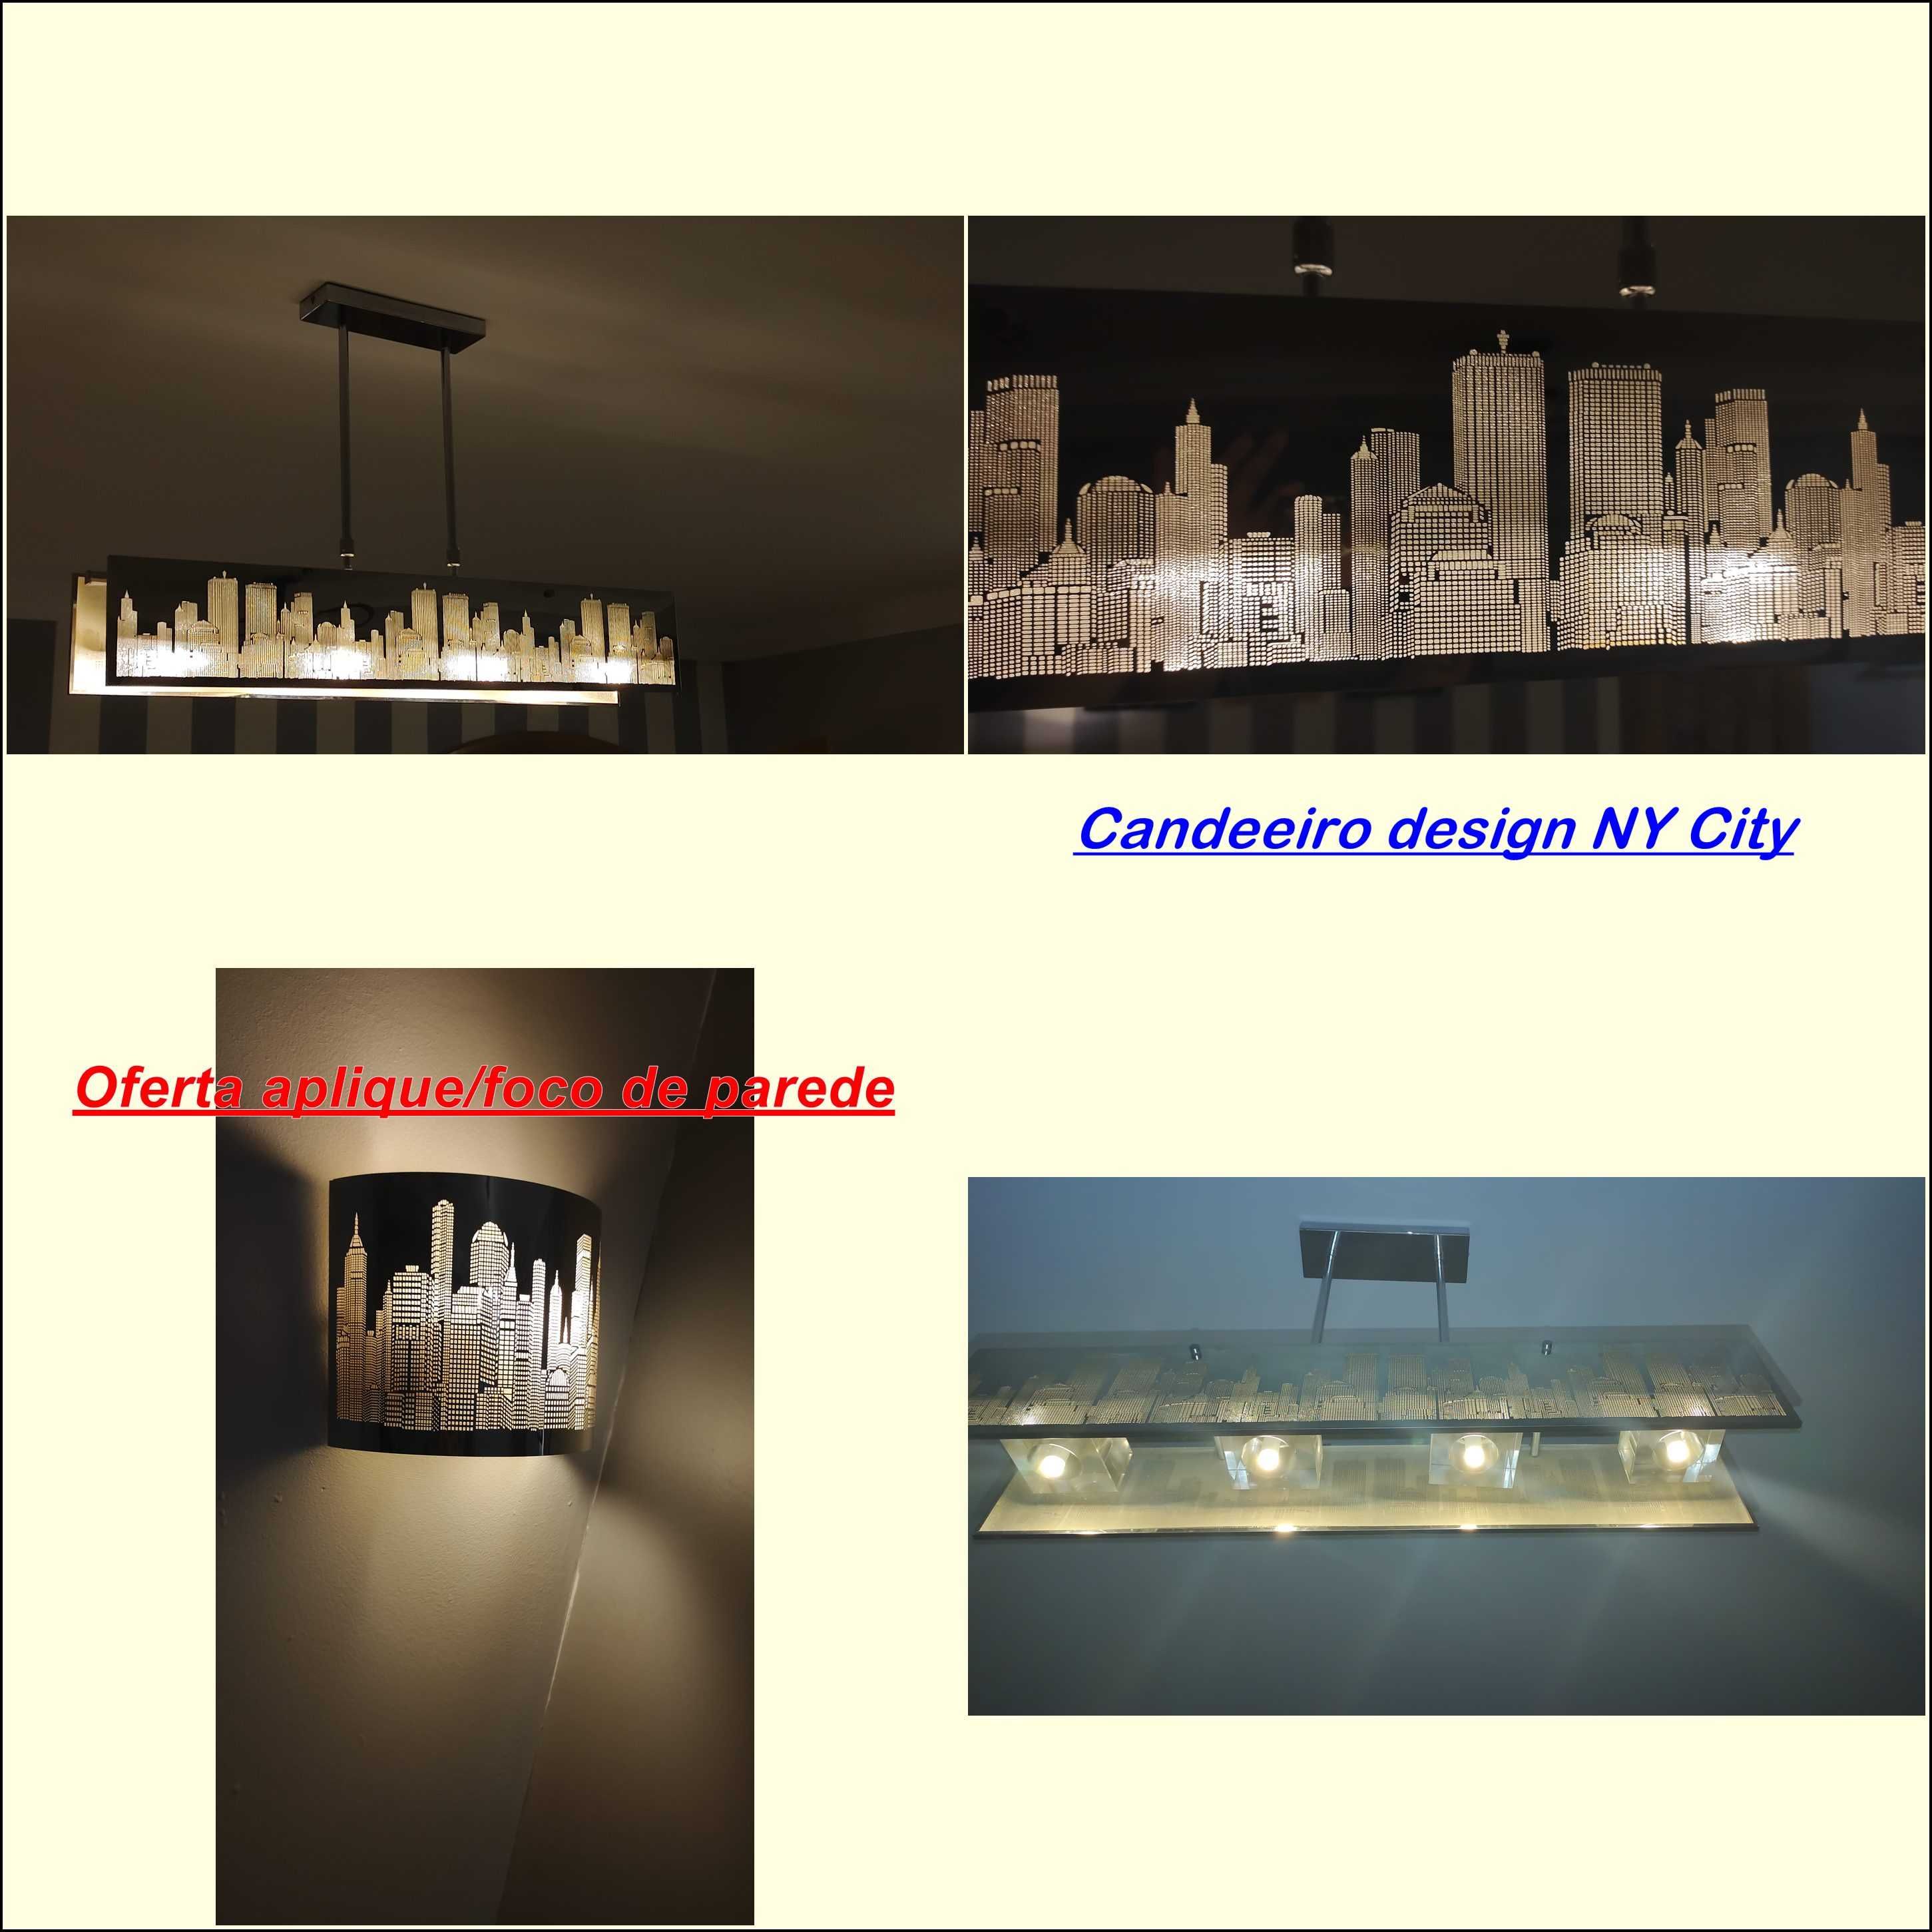 Aplique/foco luz oferta na compra de candeeiro design NY City